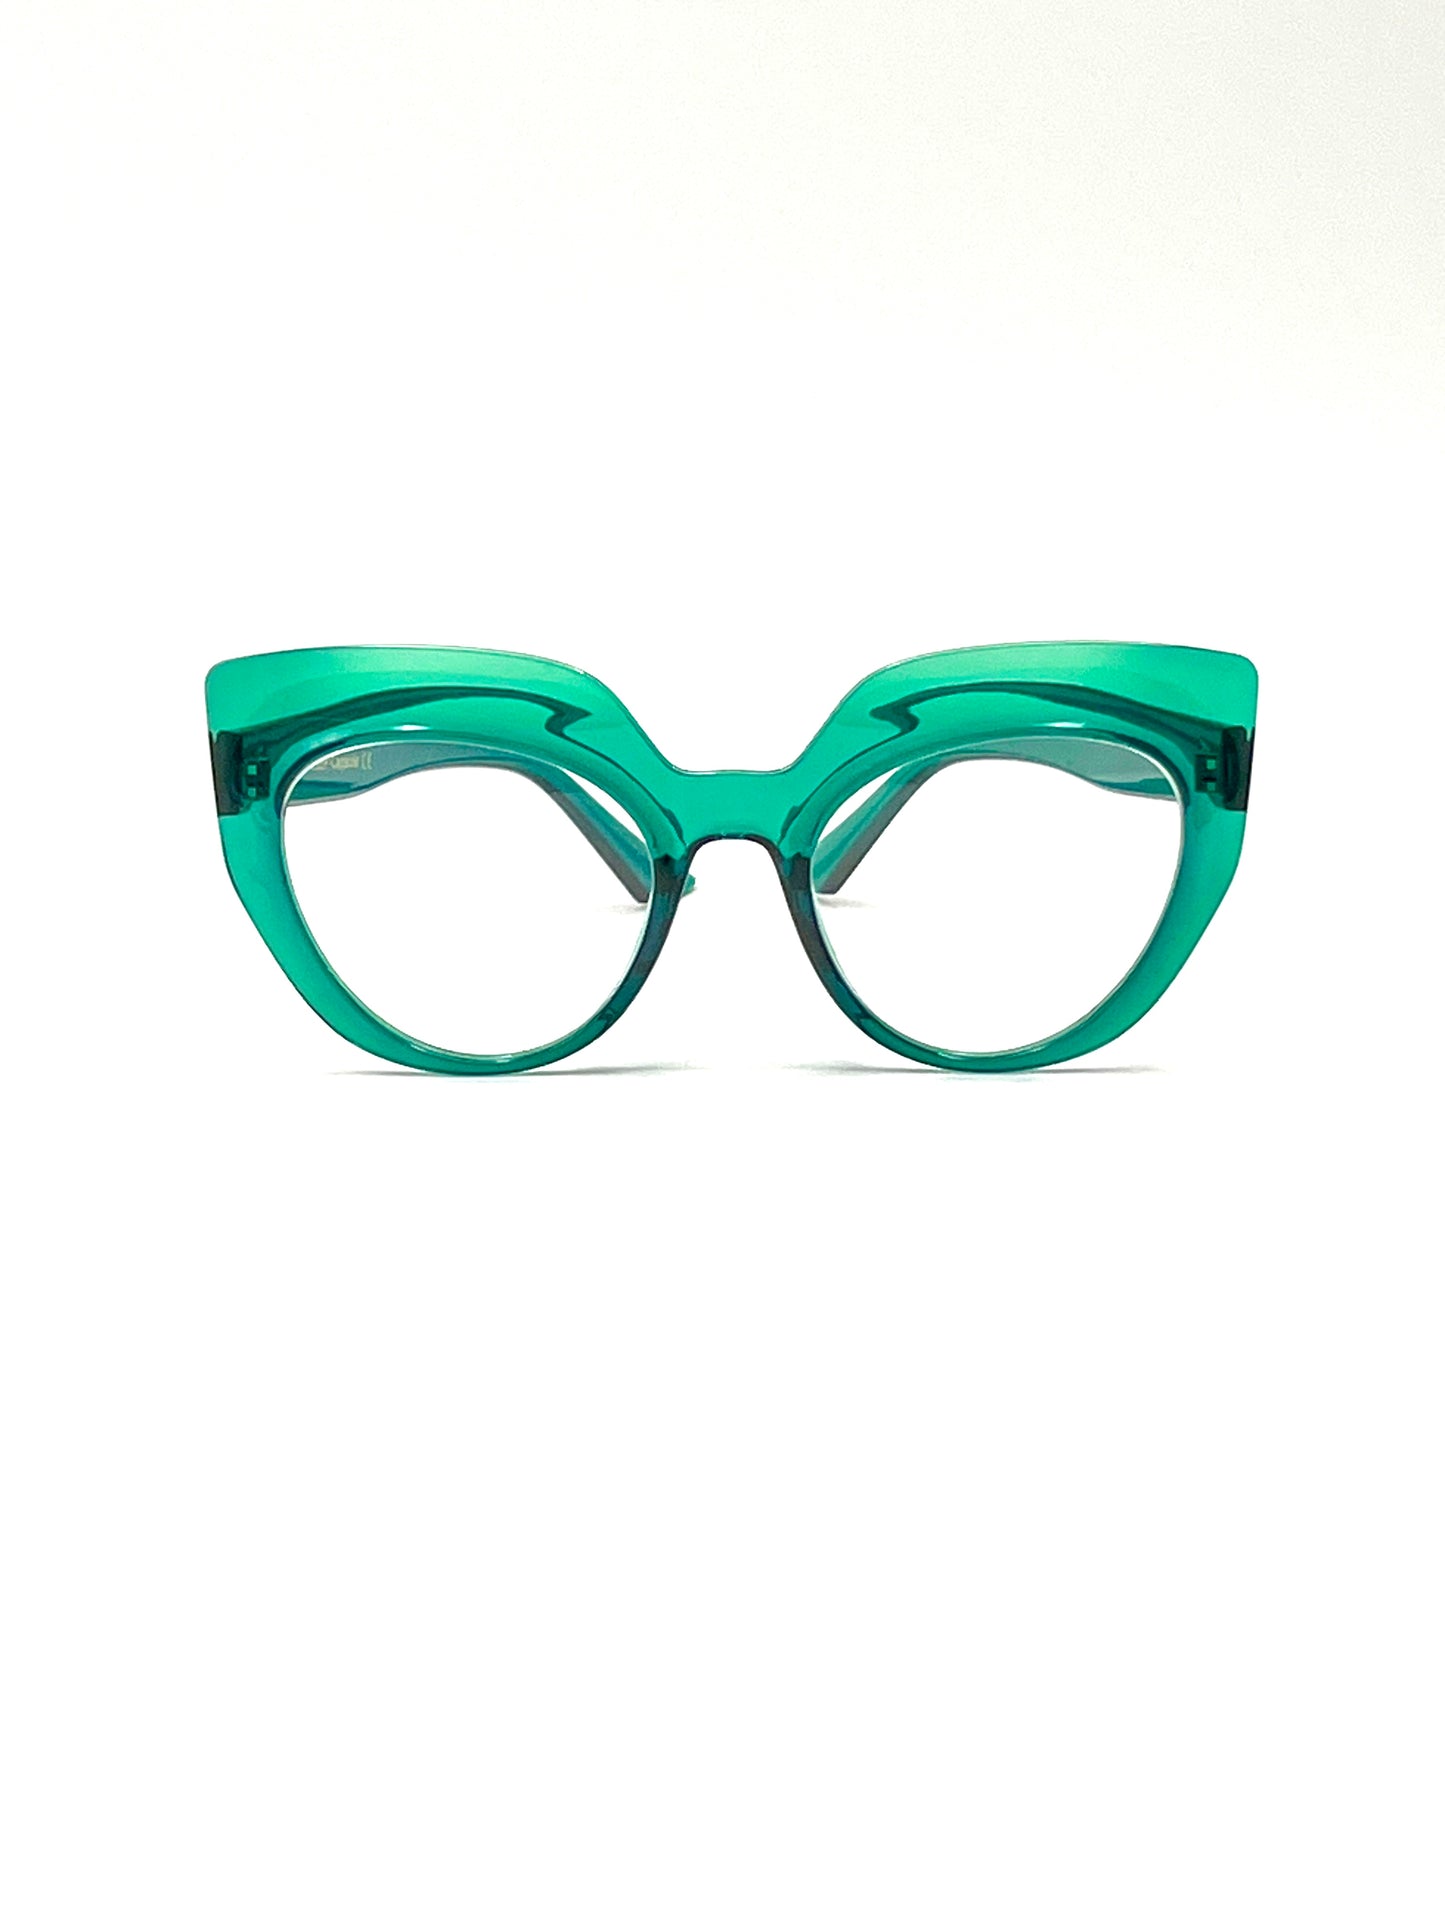 Mod. PO1884, verde smeraldo., 58EP Capsule, occhiale da lettura